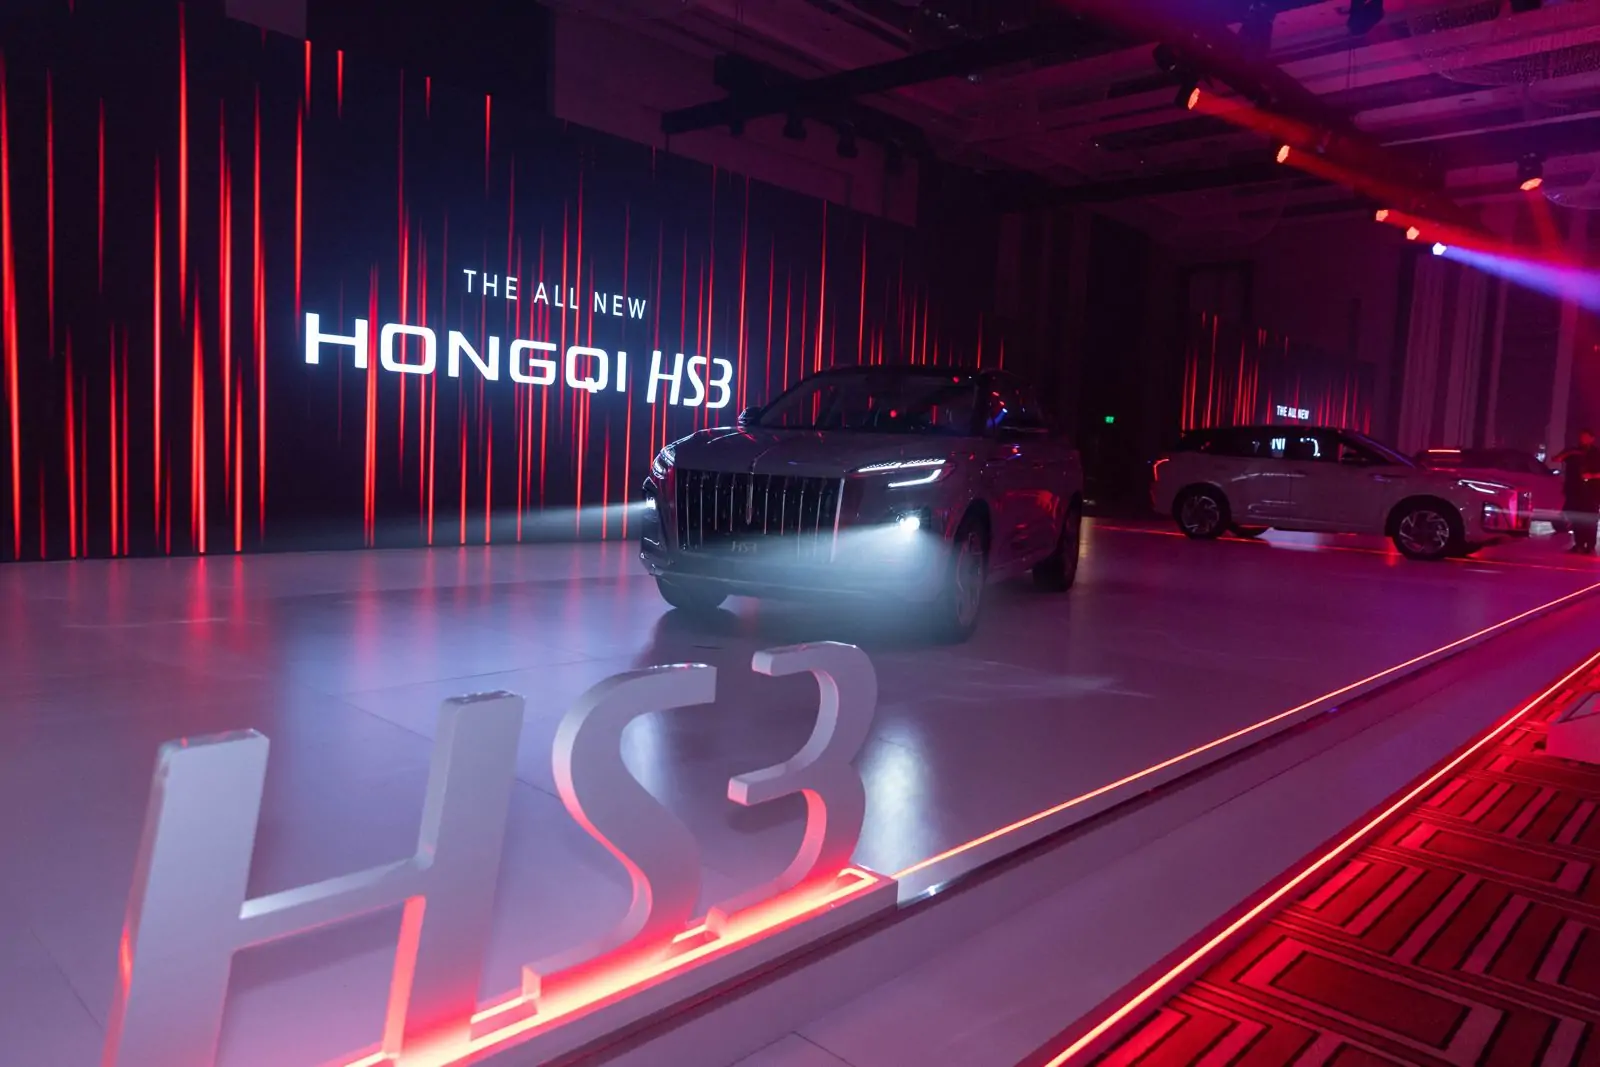 هونشي hs3 2024 الجديدة تنطلق بتصميم عصري وأداء استثنائي.. المميزات والأسعار